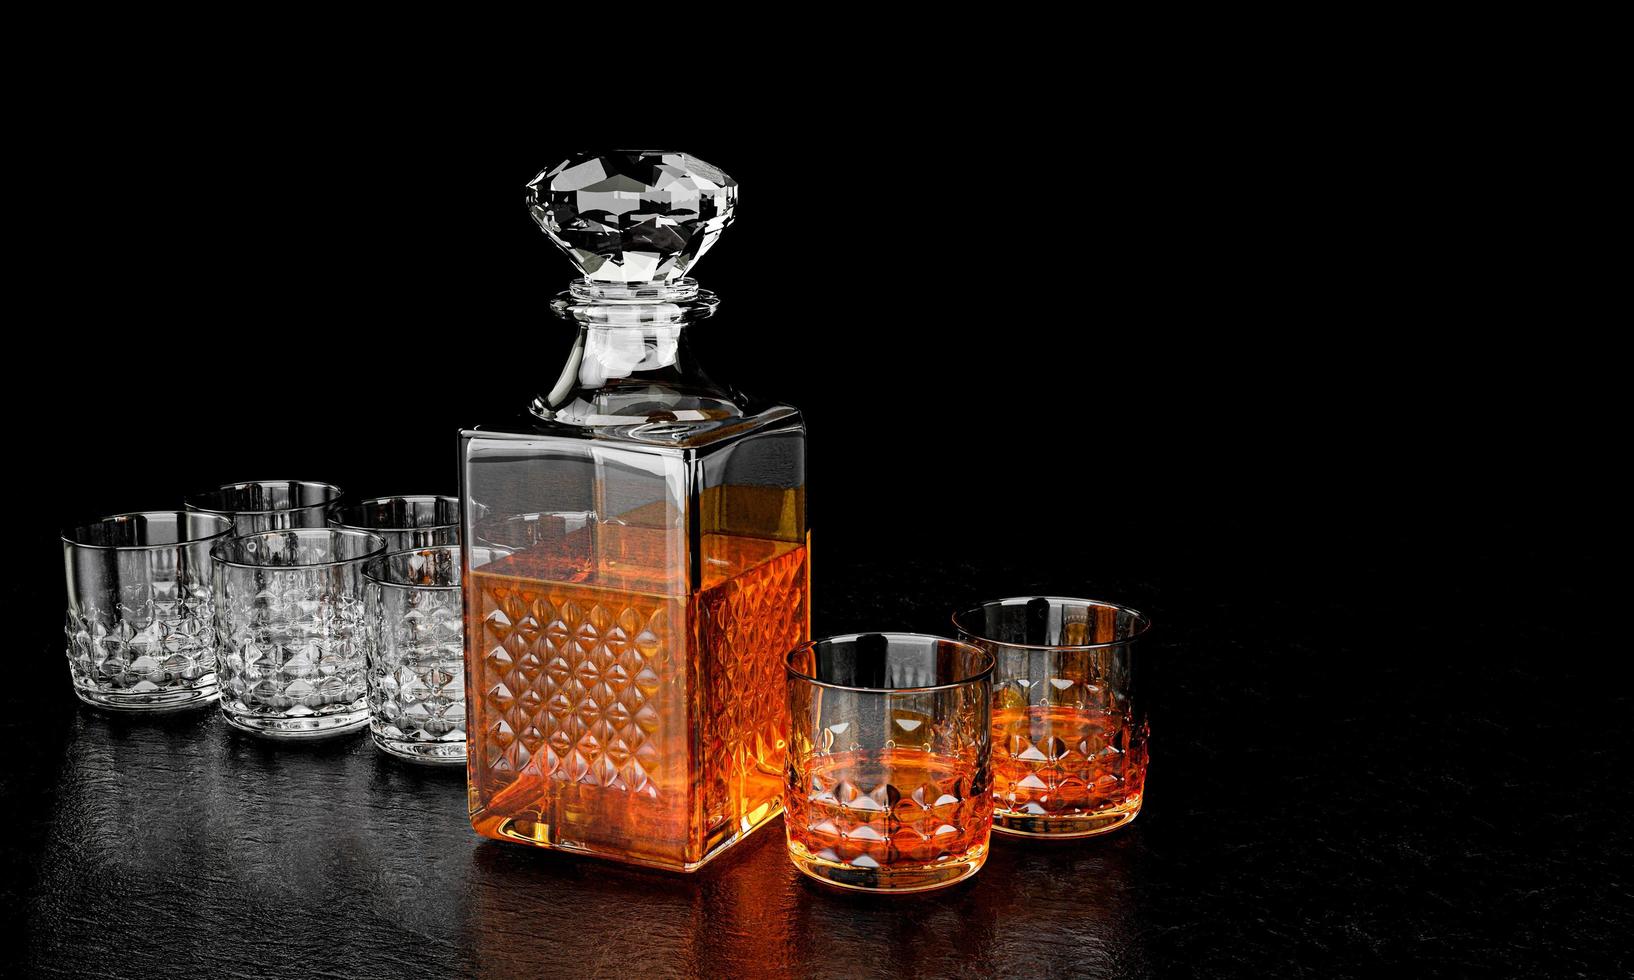 la botella y el vaso tienen un patrón elegante para brandy o whisky. la botella de vidrio tiene un corcho en forma de diamante. la botella y el vaso tienen un patrón de cristal con un fondo negro y un negro foto